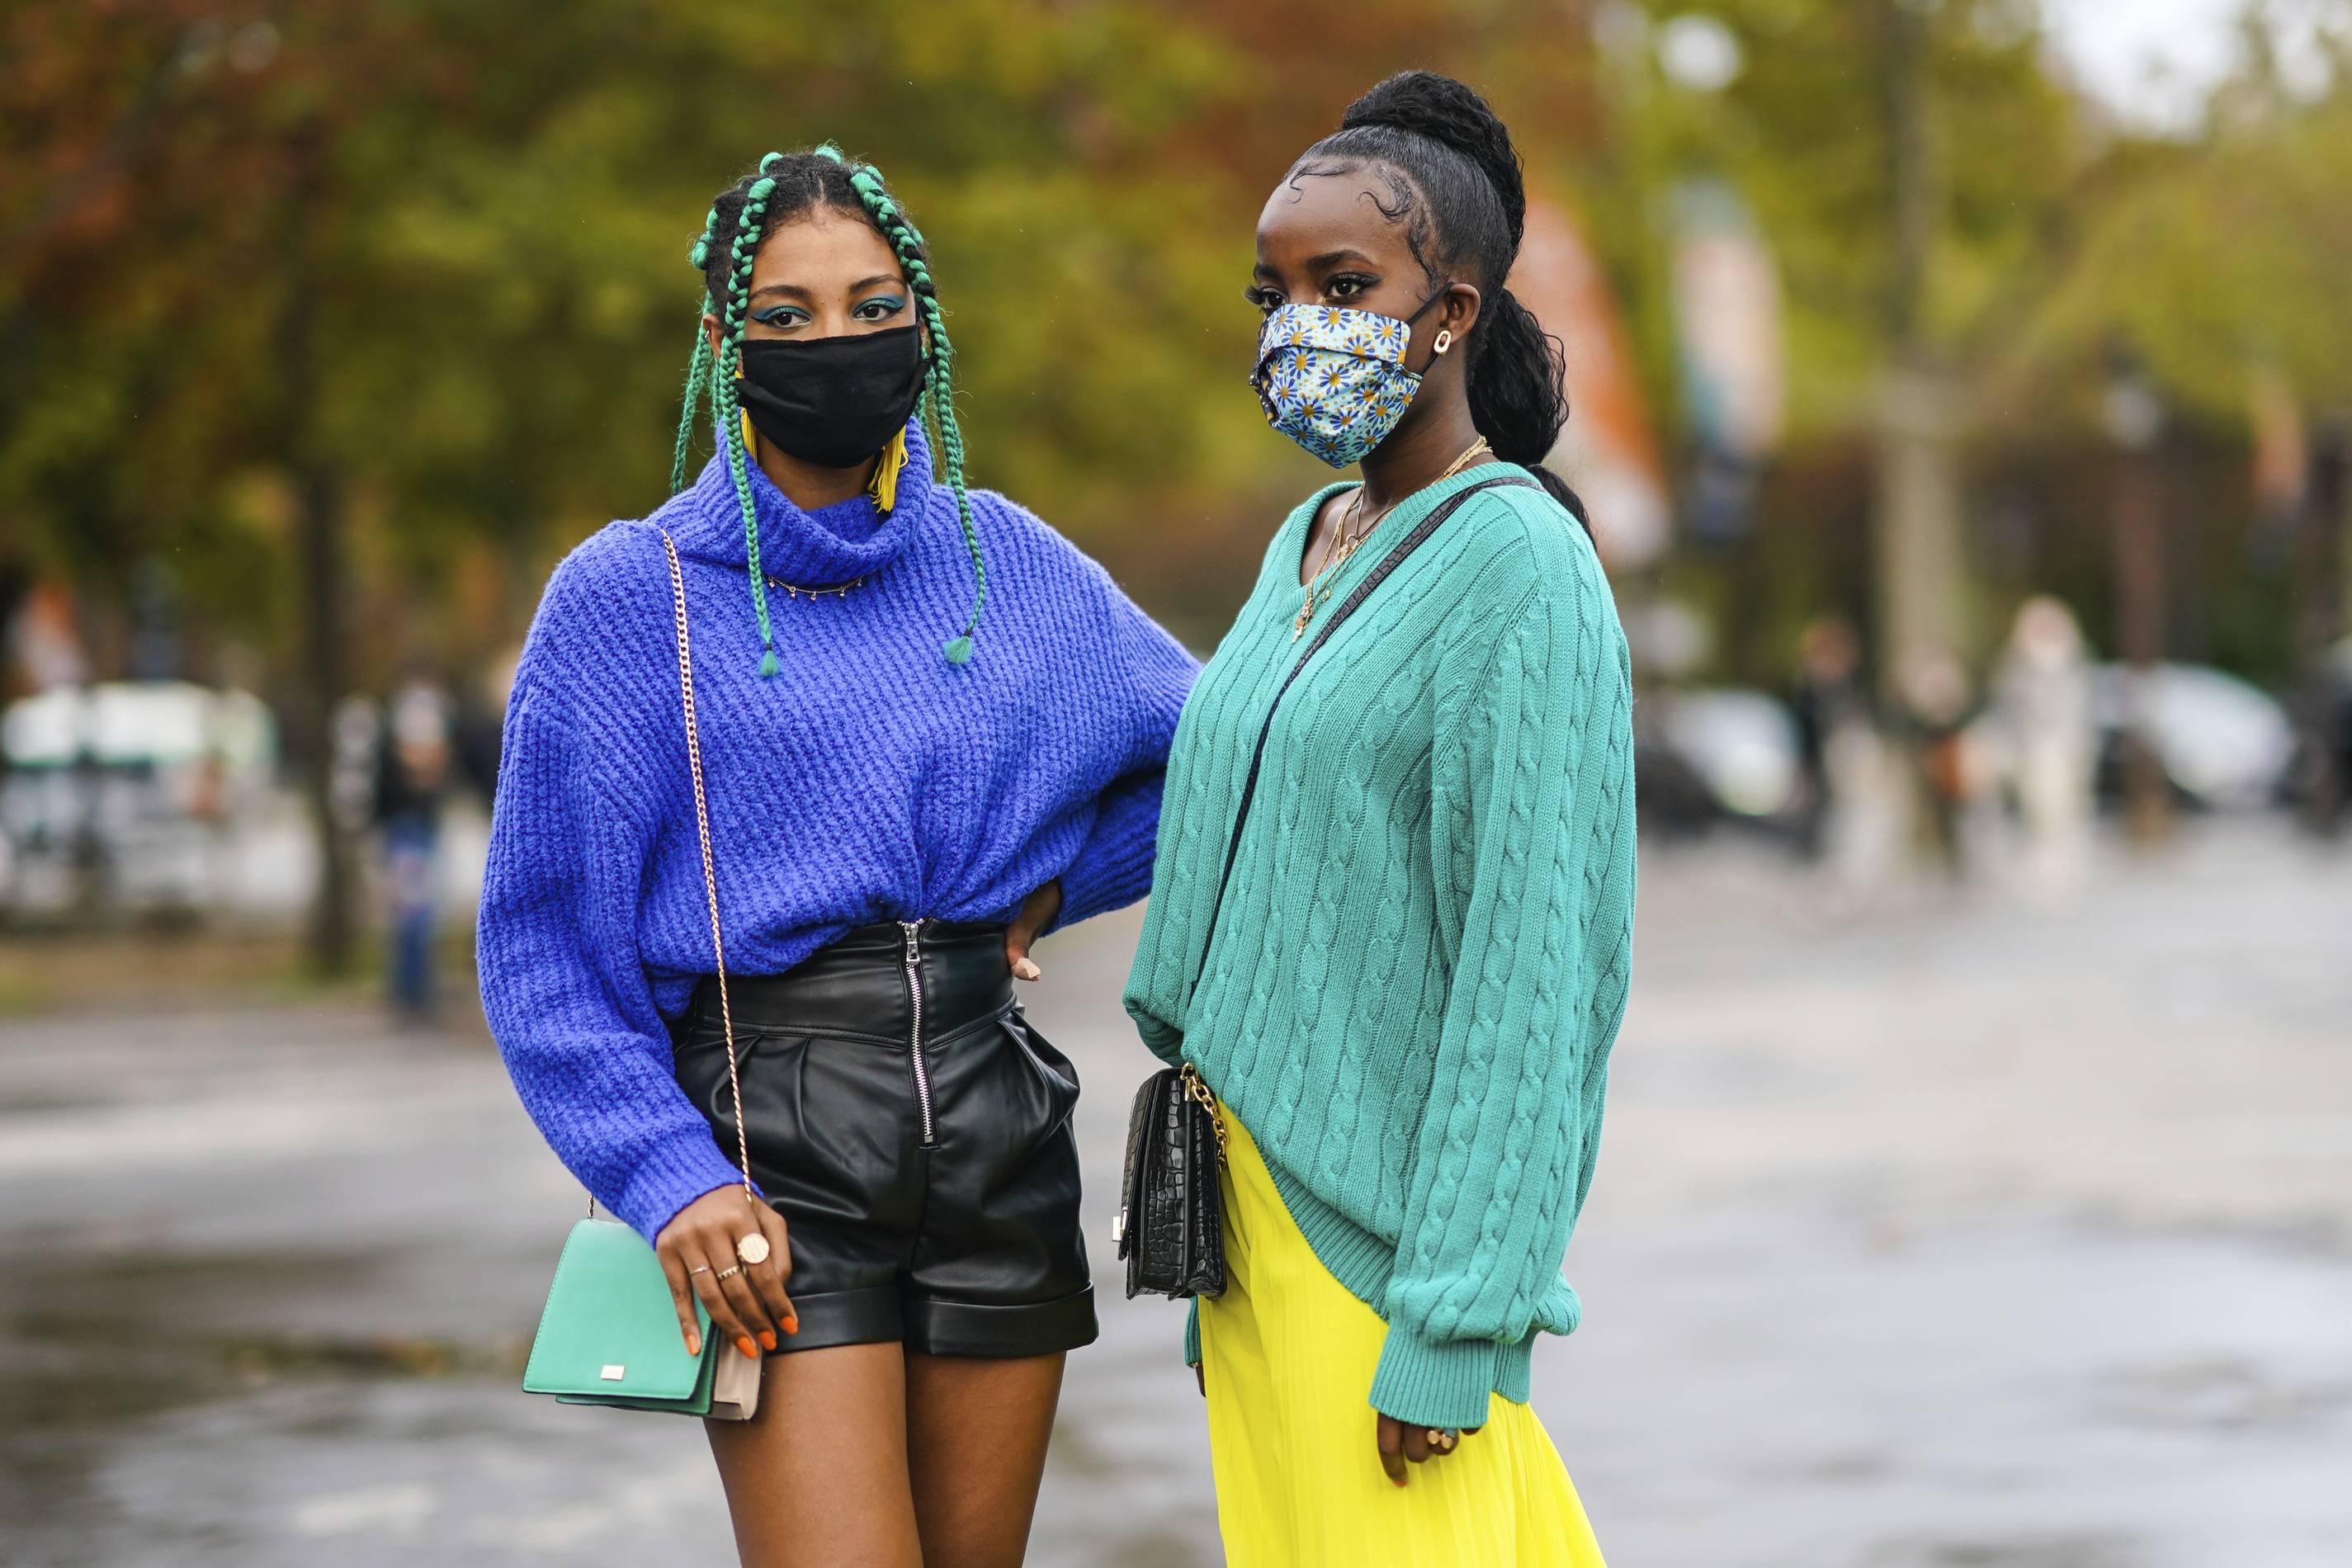 Women at Paris Fashion Week wearing face masks